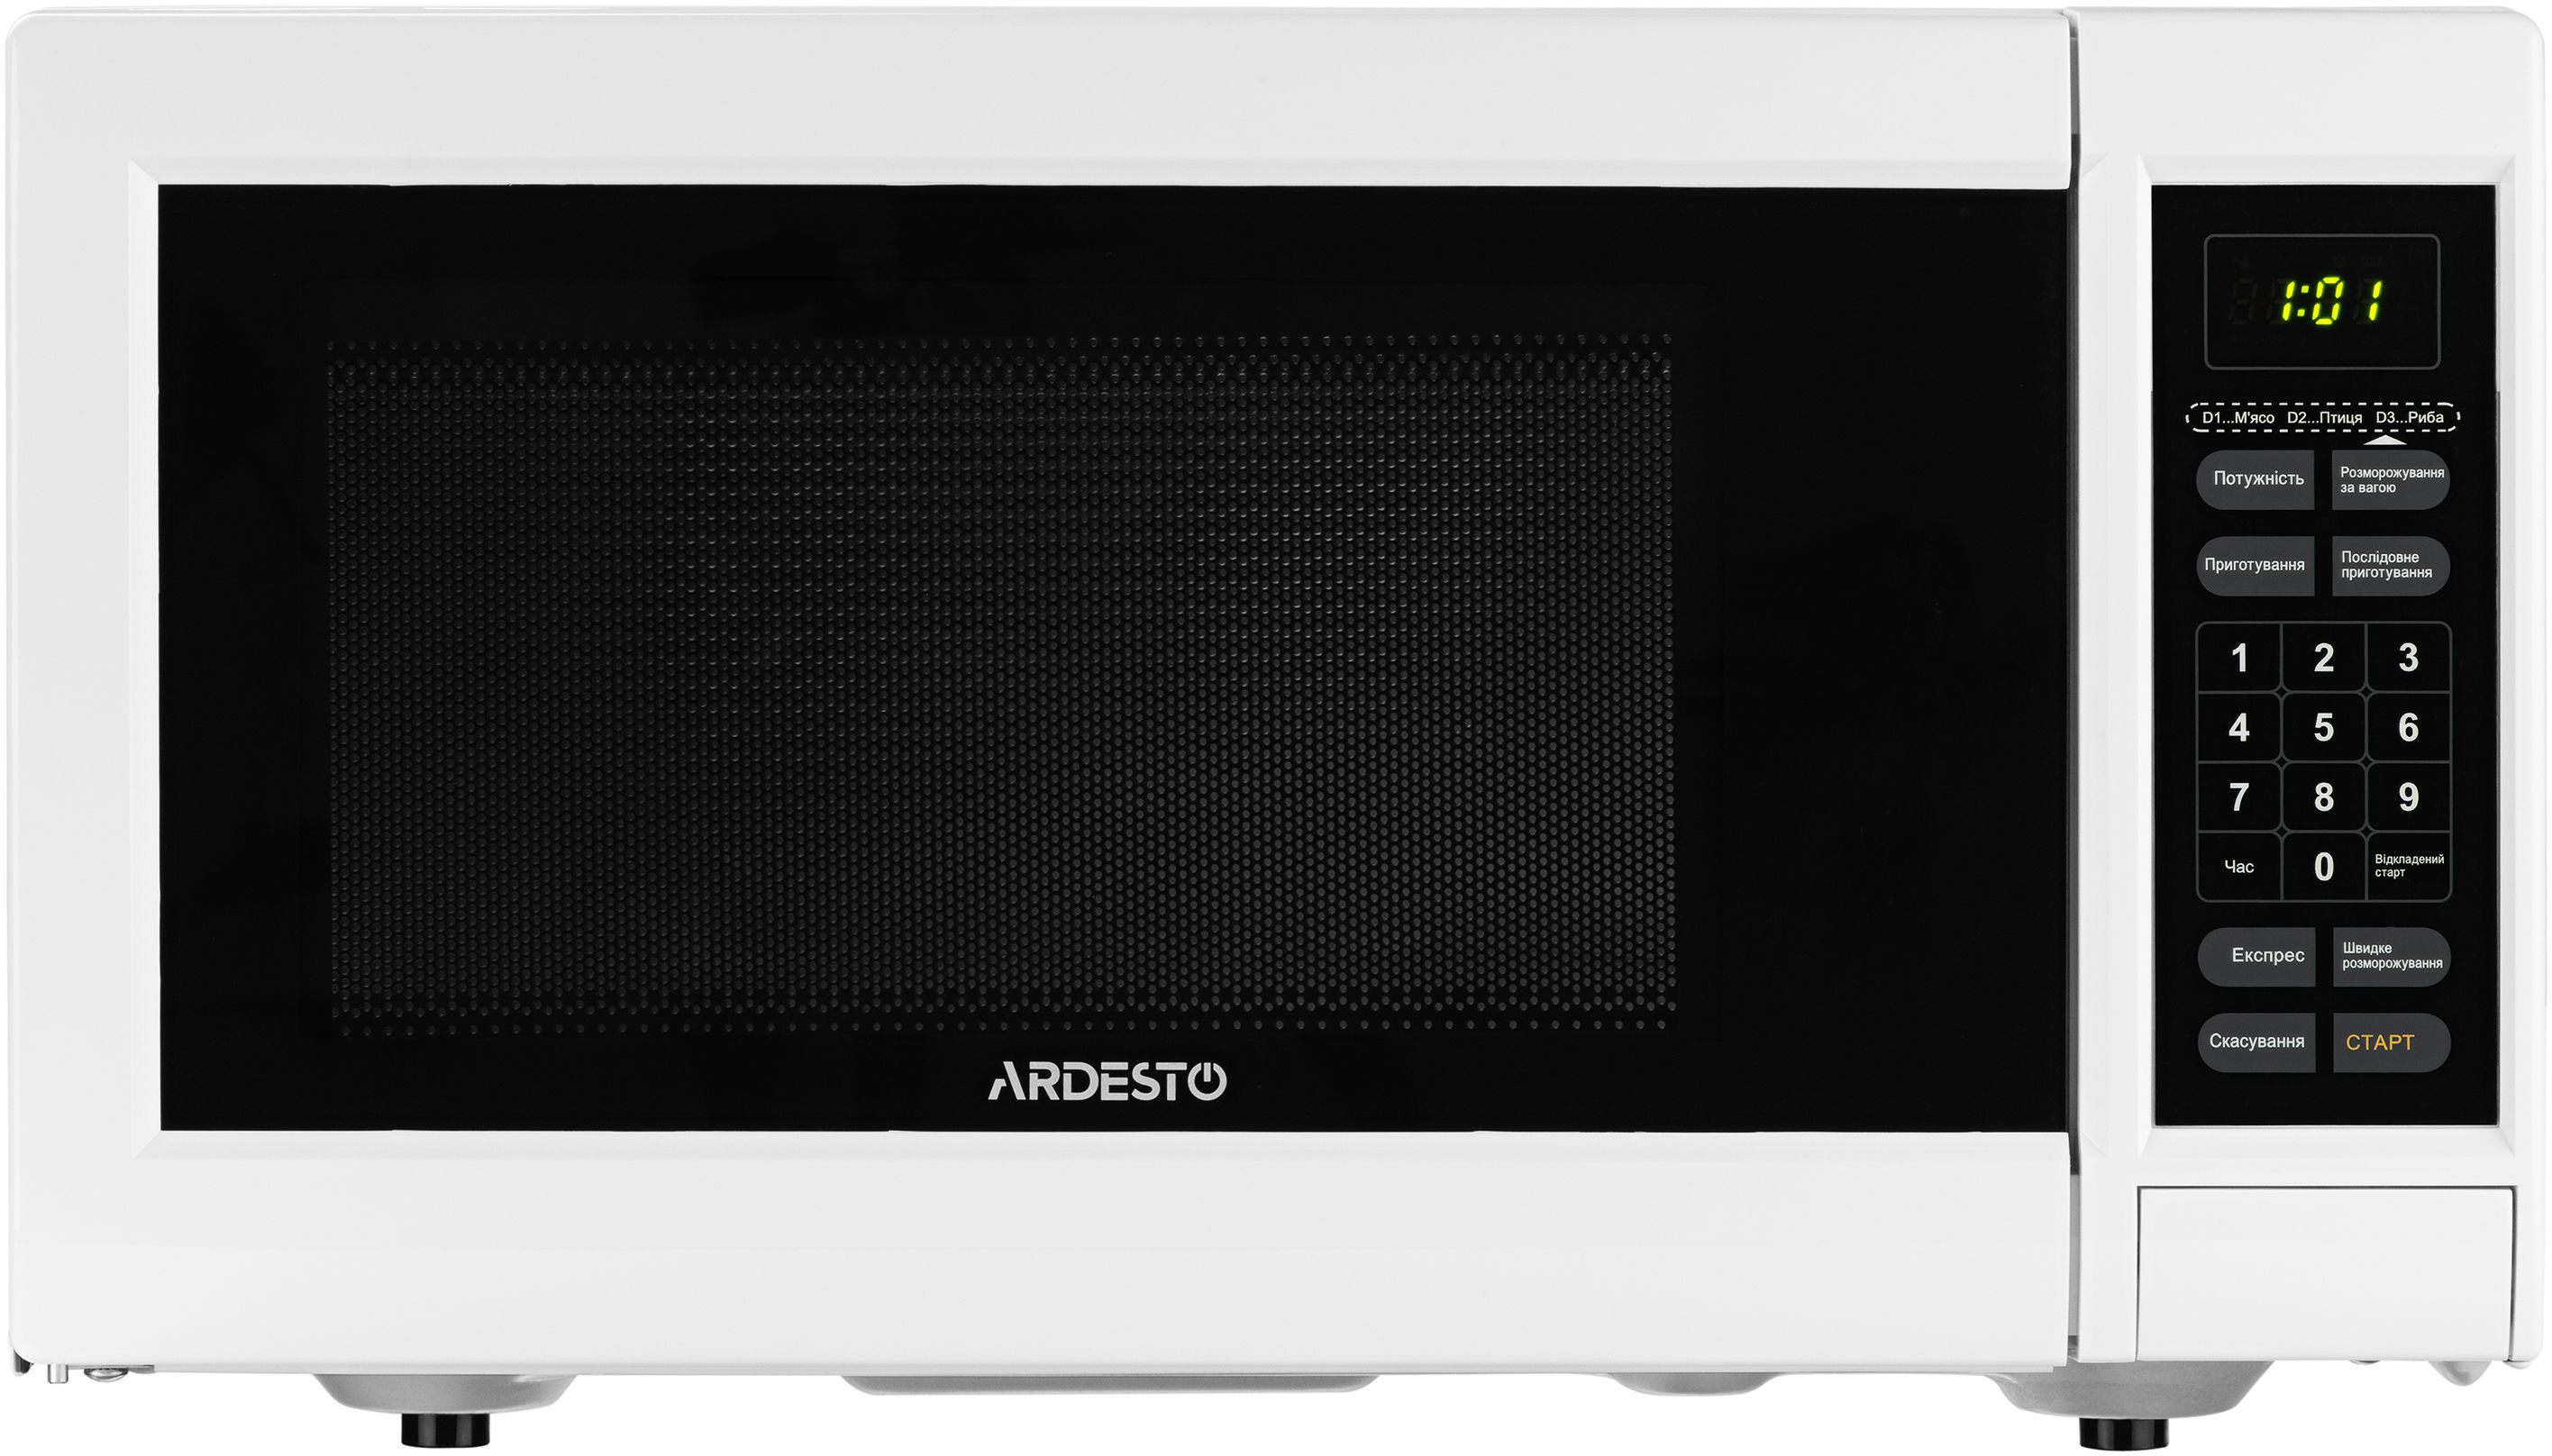 Микроволновая печь Ardesto GO-E923W цена 3199.00 грн - фотография 2